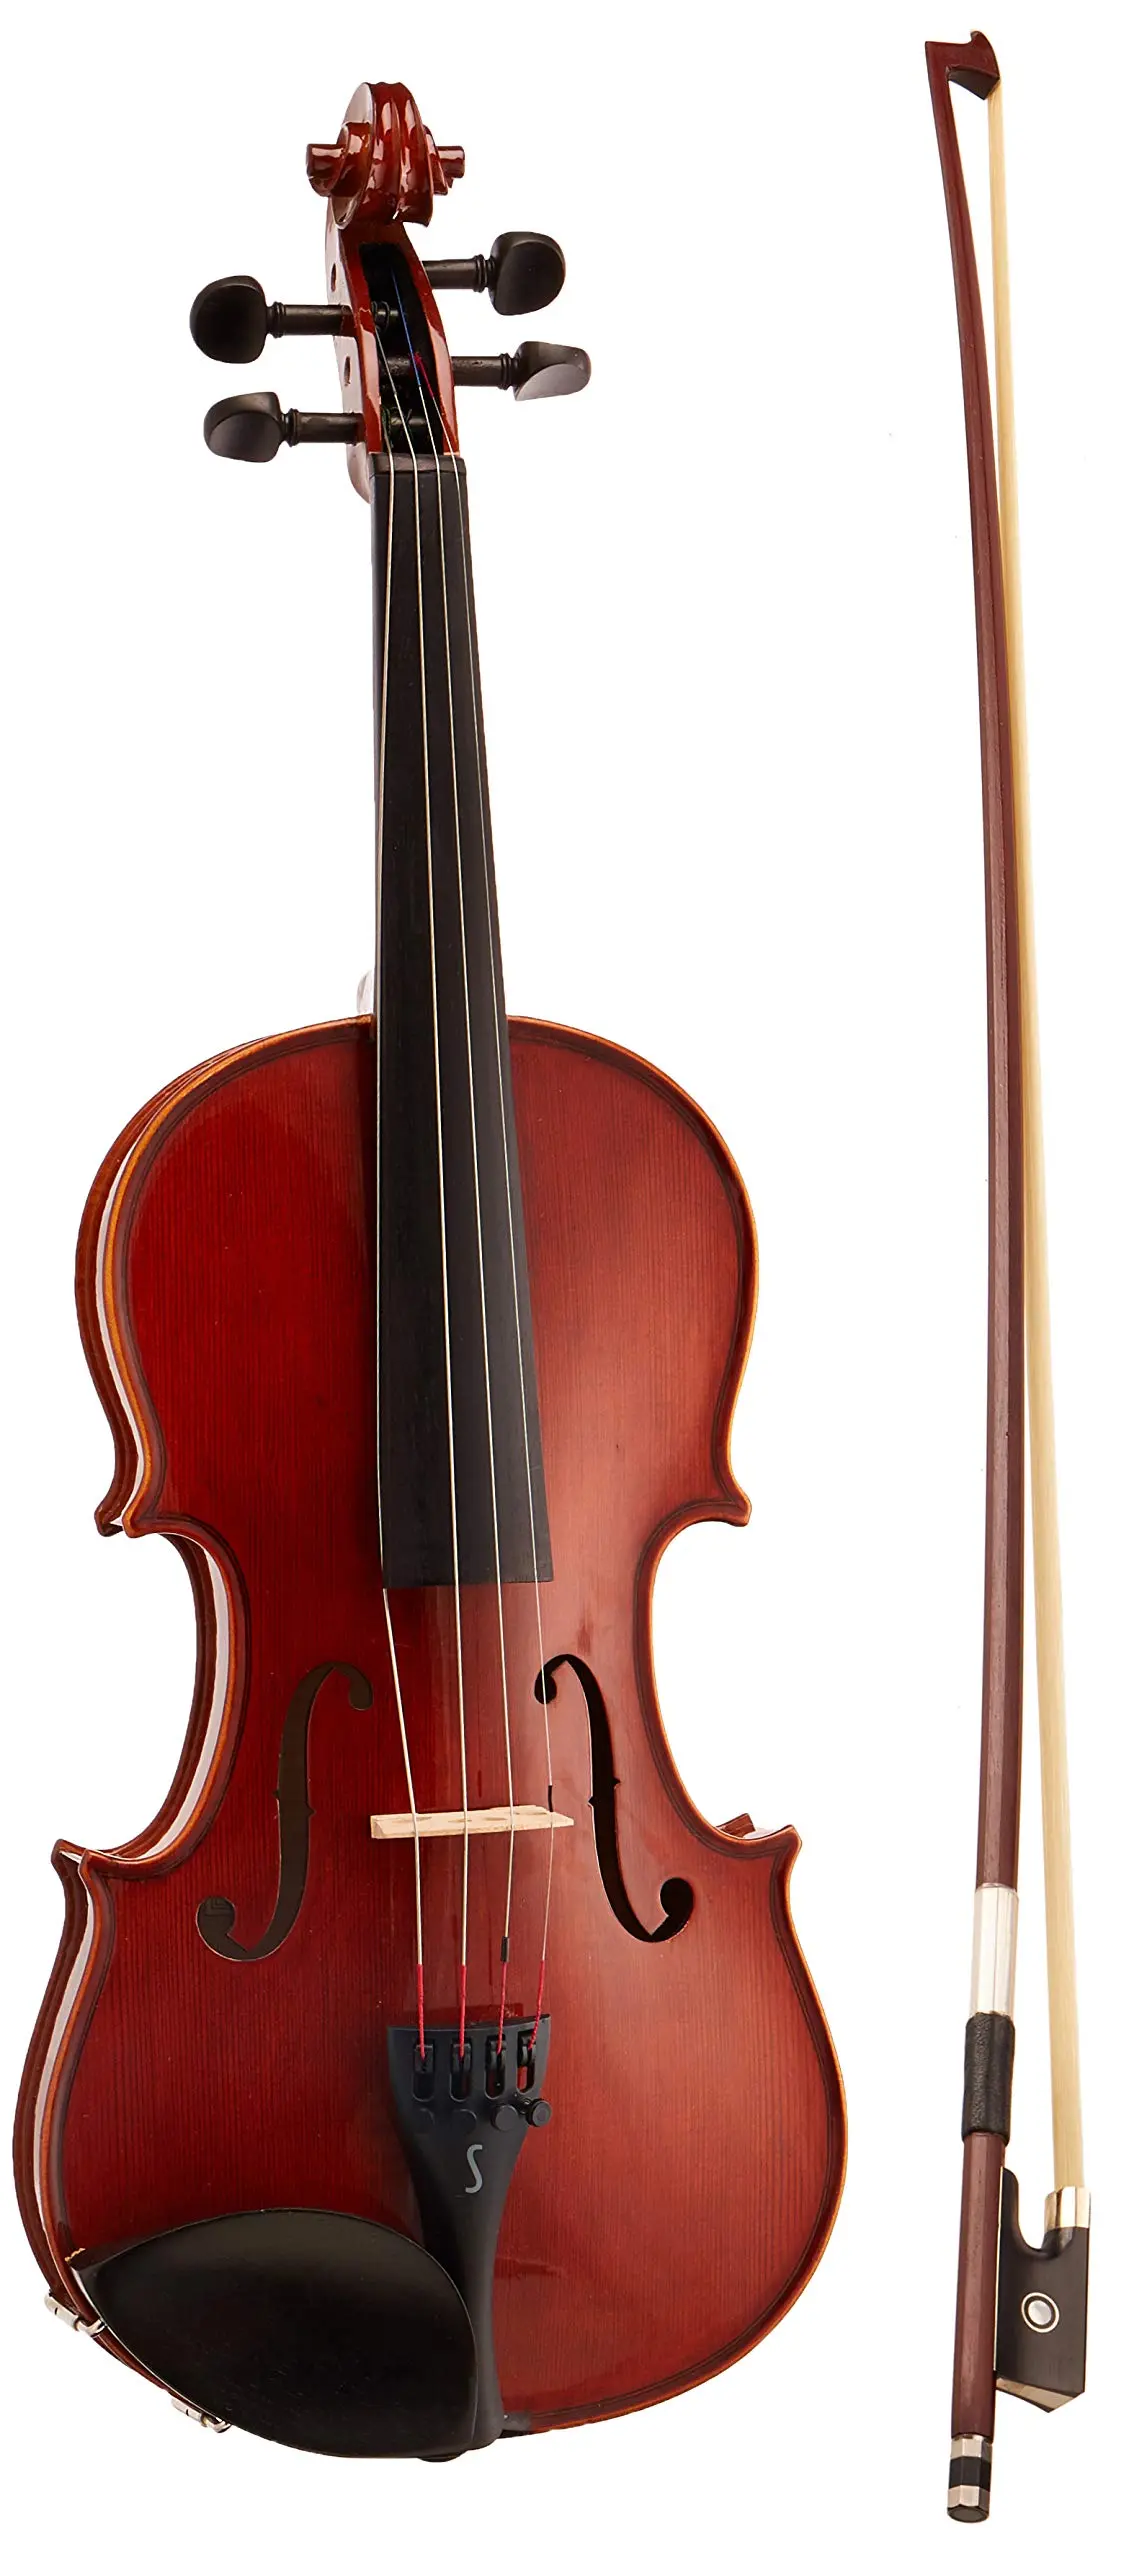 violin stentor precio - Son buenos los violines Stentor